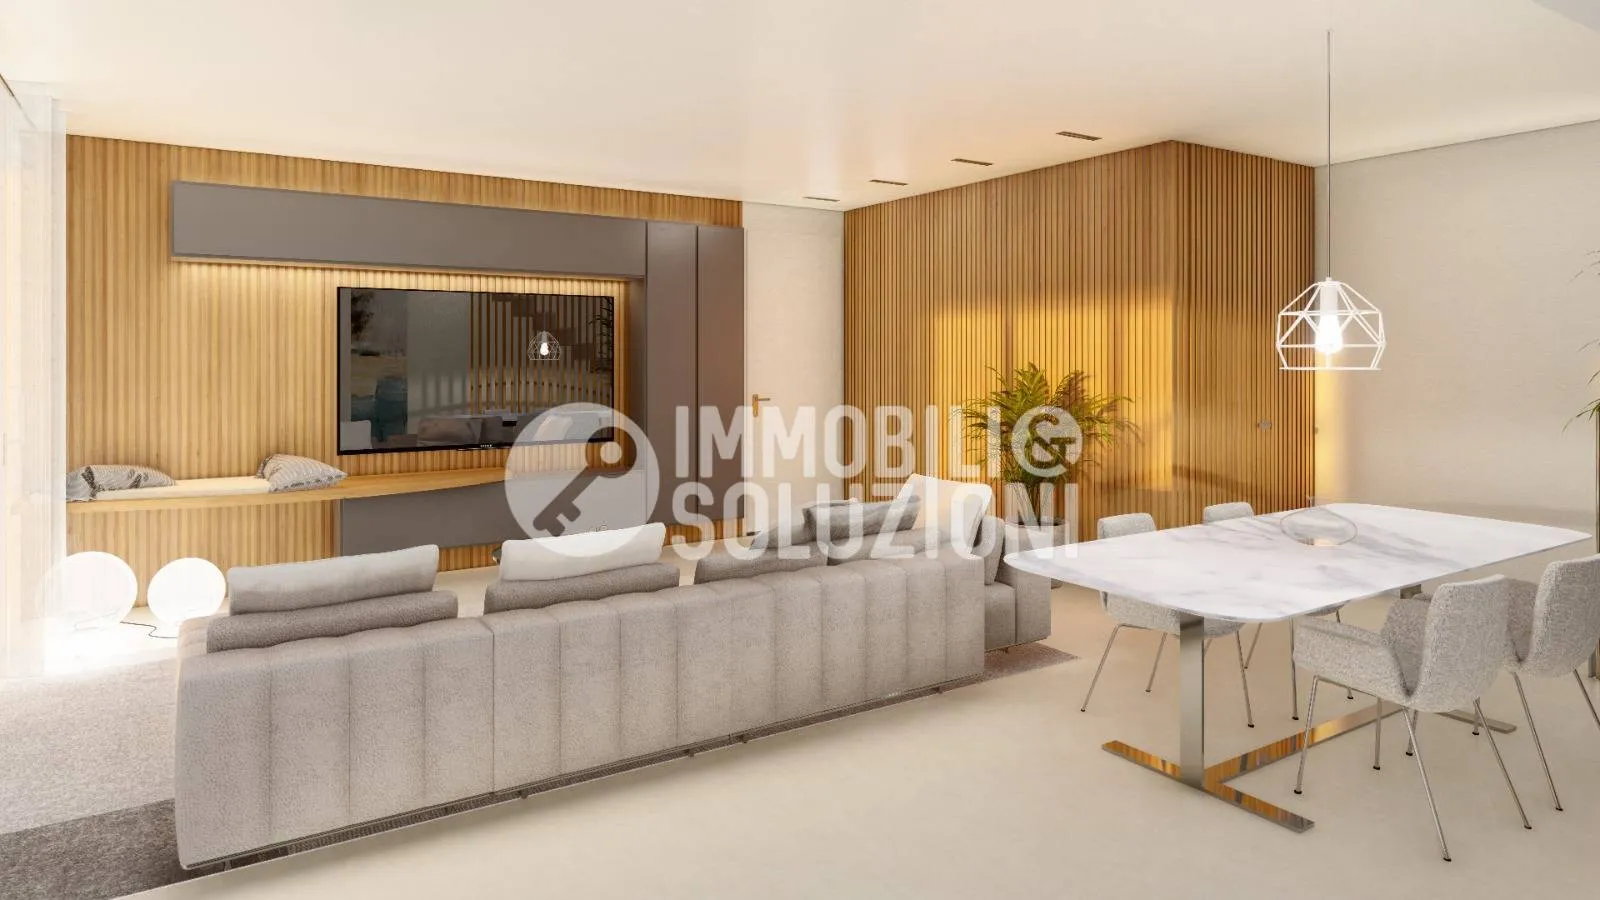 Immagine per Appartamento in vendita a Bergamo via Mazzini